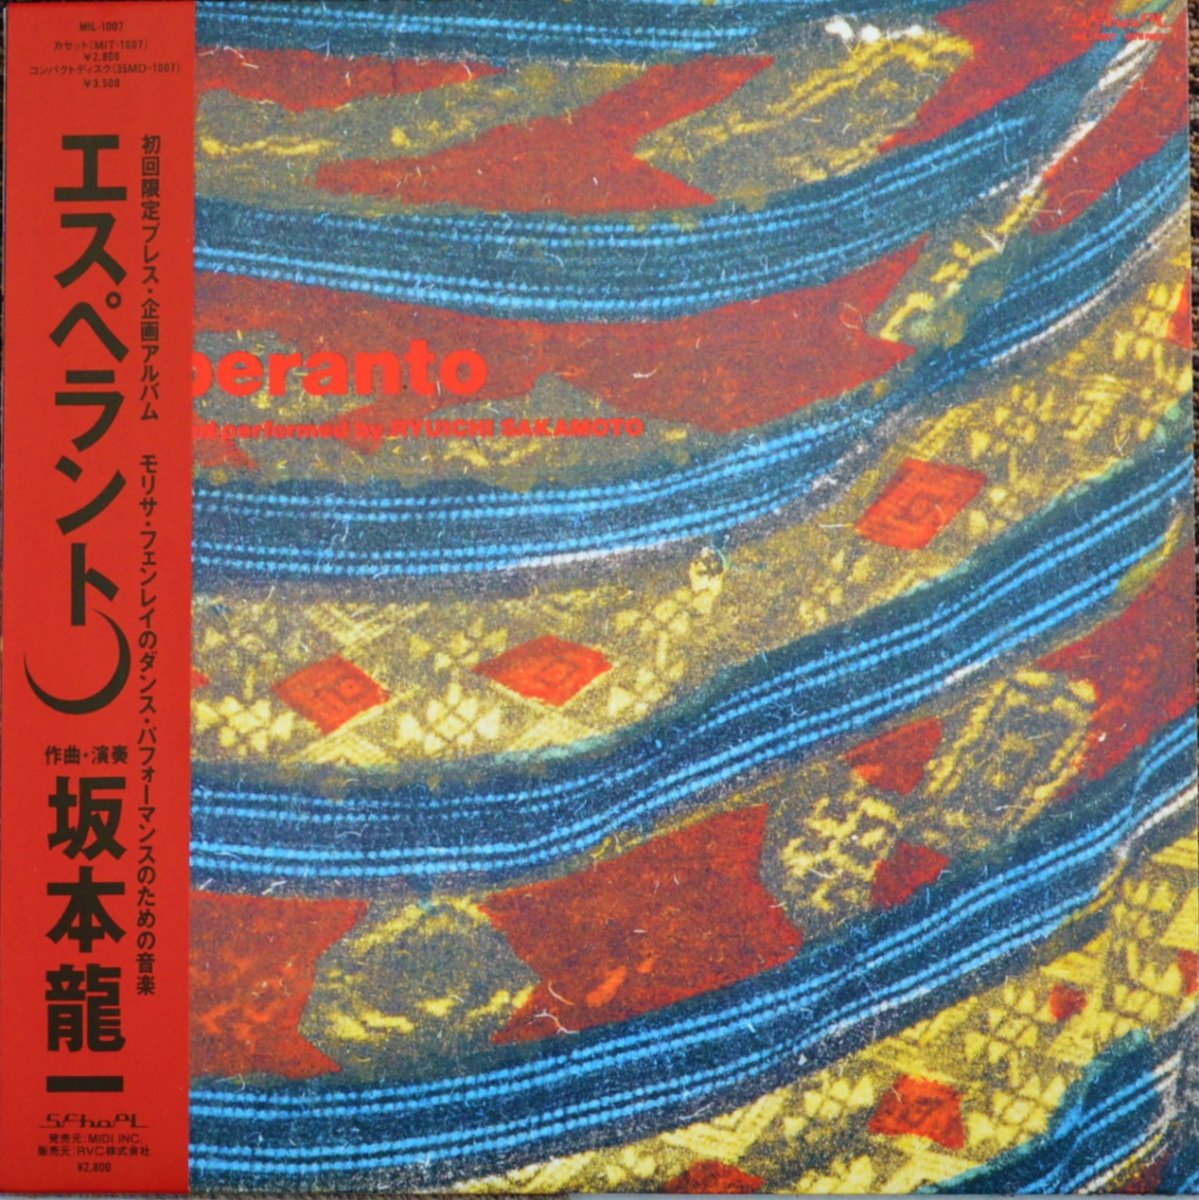 坂本龍一 RYUICHI SAKAMOTO / エスペラント ESPERANTO (LP) - HIP TANK 